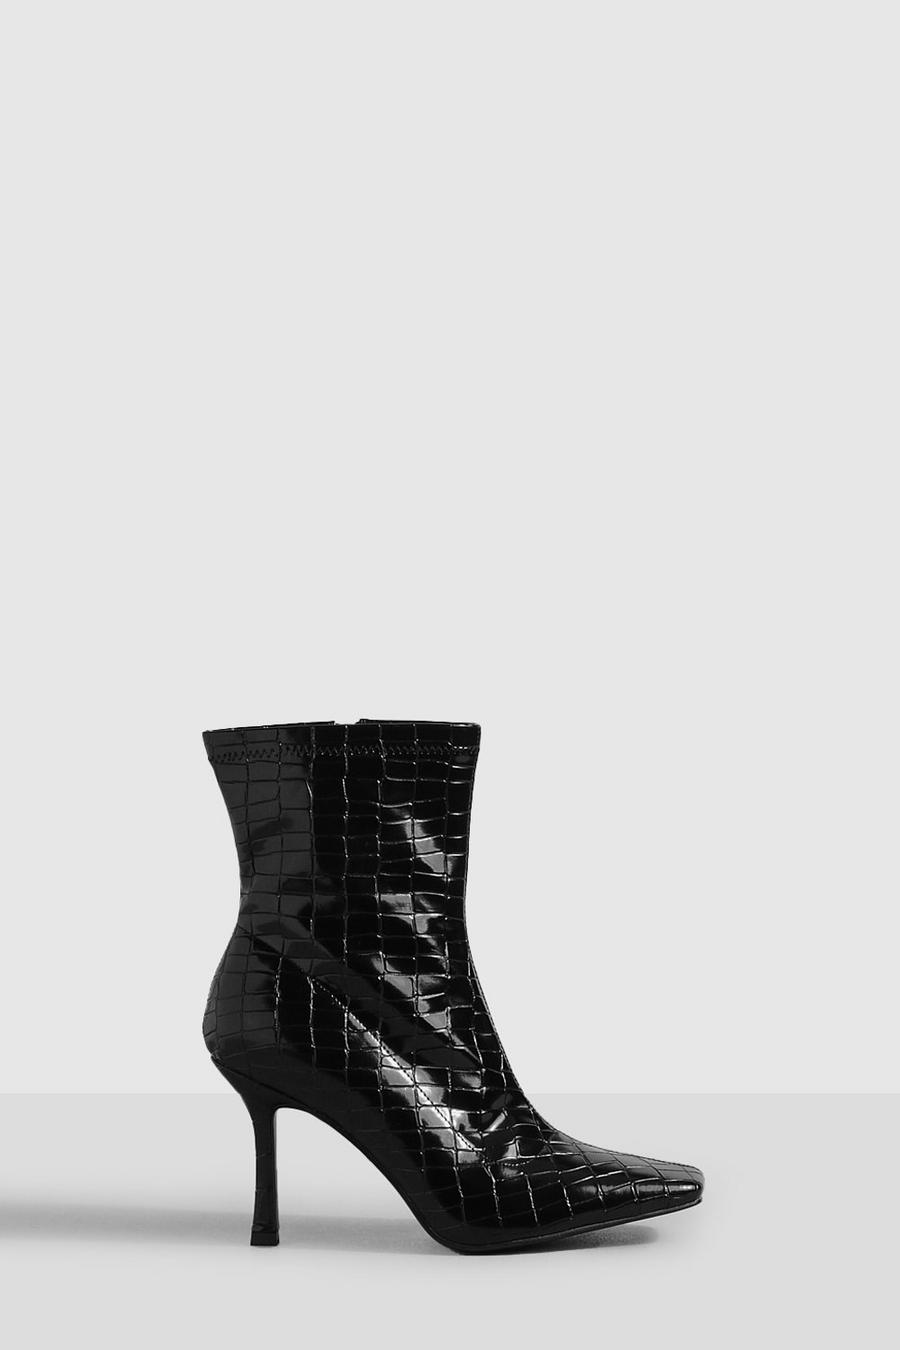 Botas calcetín de holgura ancha efecto cocodrilo con puntera cuadrada, Black negro